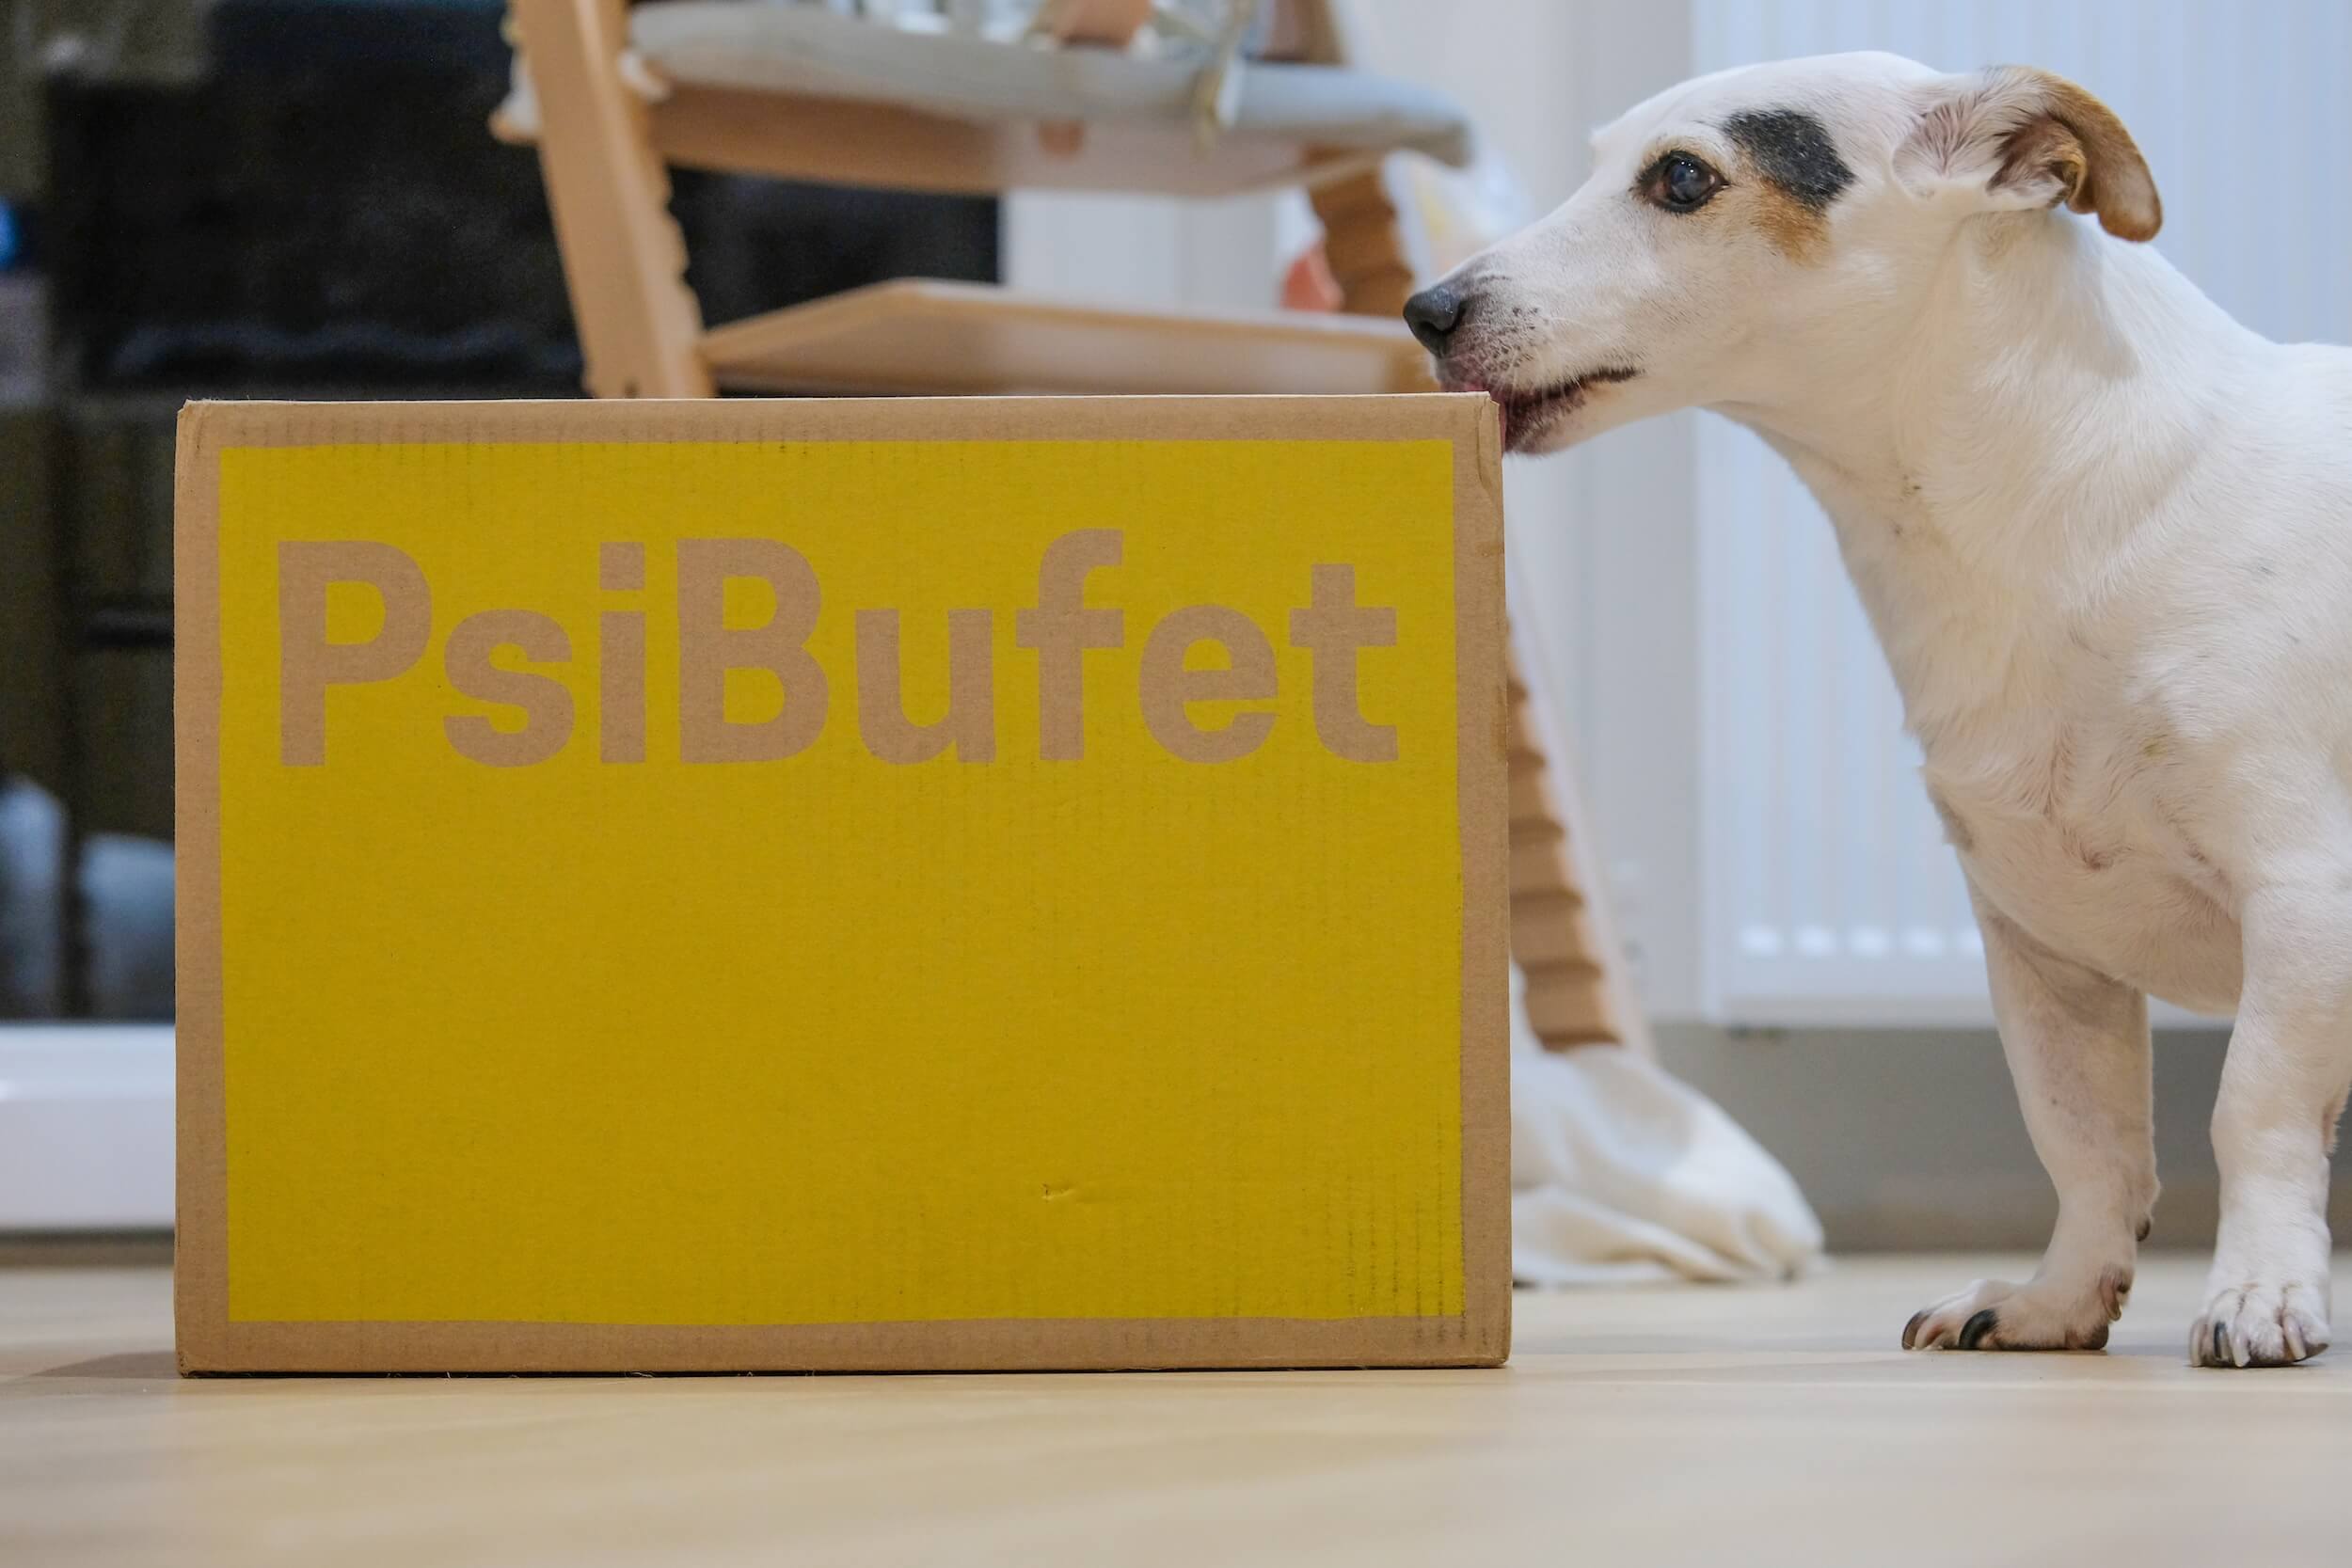 Sprawdzam Psi Bufet - testuje dietę dla psów - mielipide? 🤔